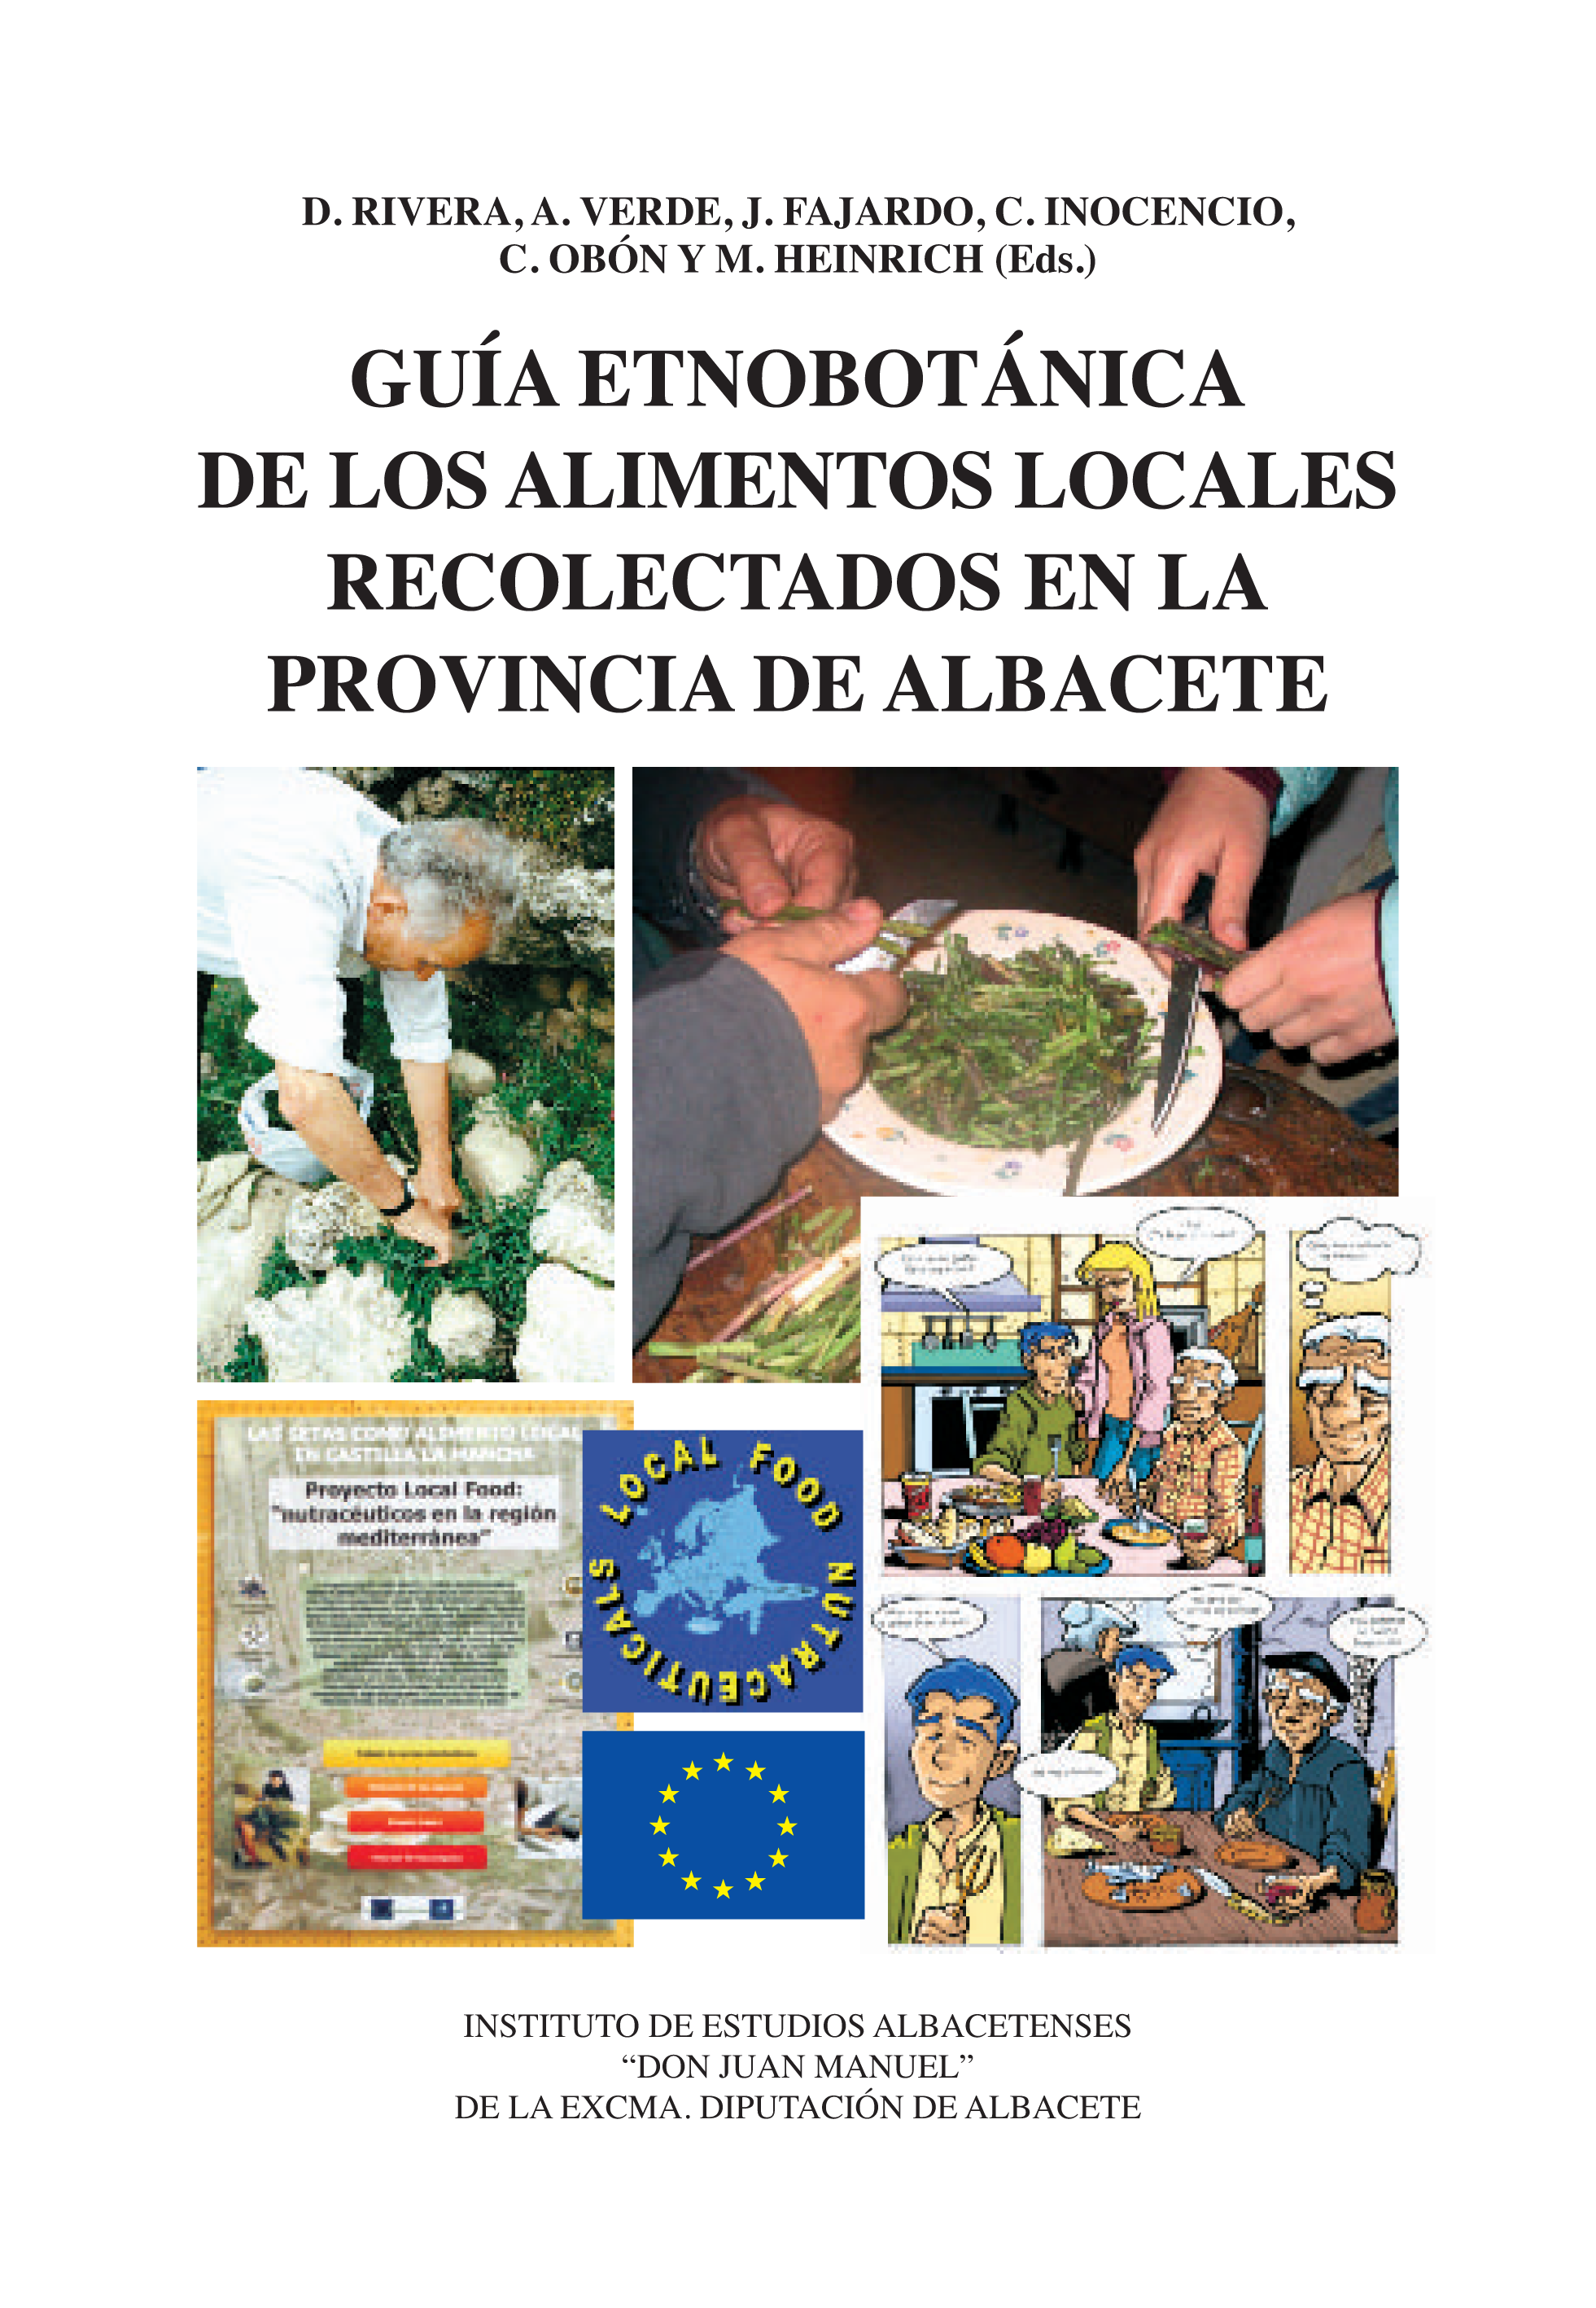 Imagen de portada del libro Guía etnobotánica de los alimentos locales recolectados en la provincia de Albacete